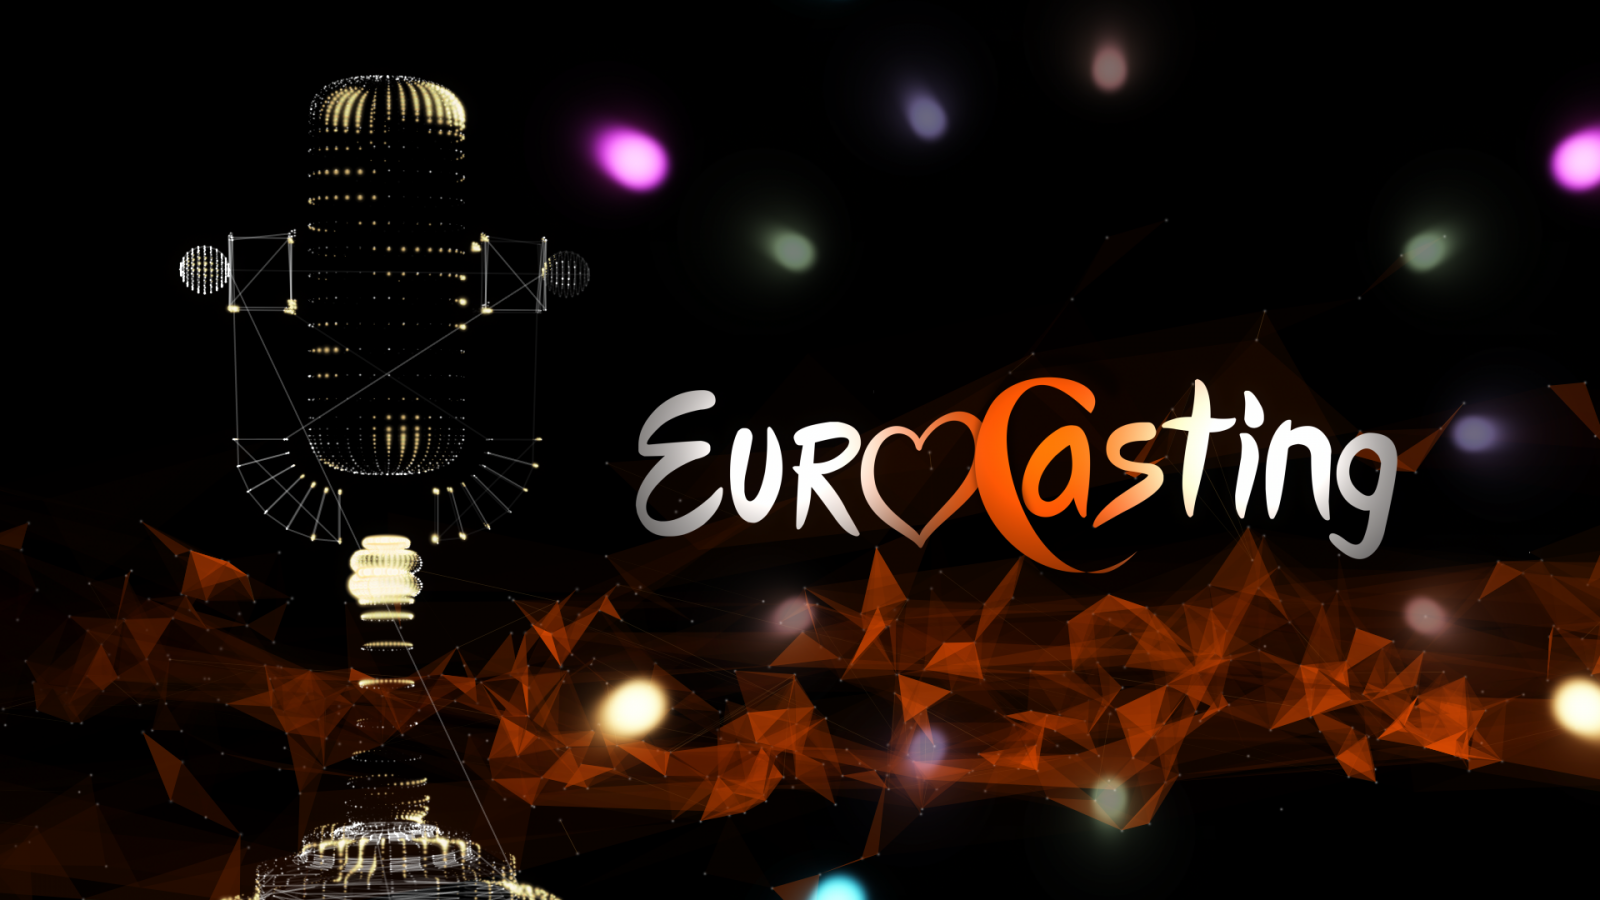 La final del Eurocasting se celebrará el jueves 12 de enero